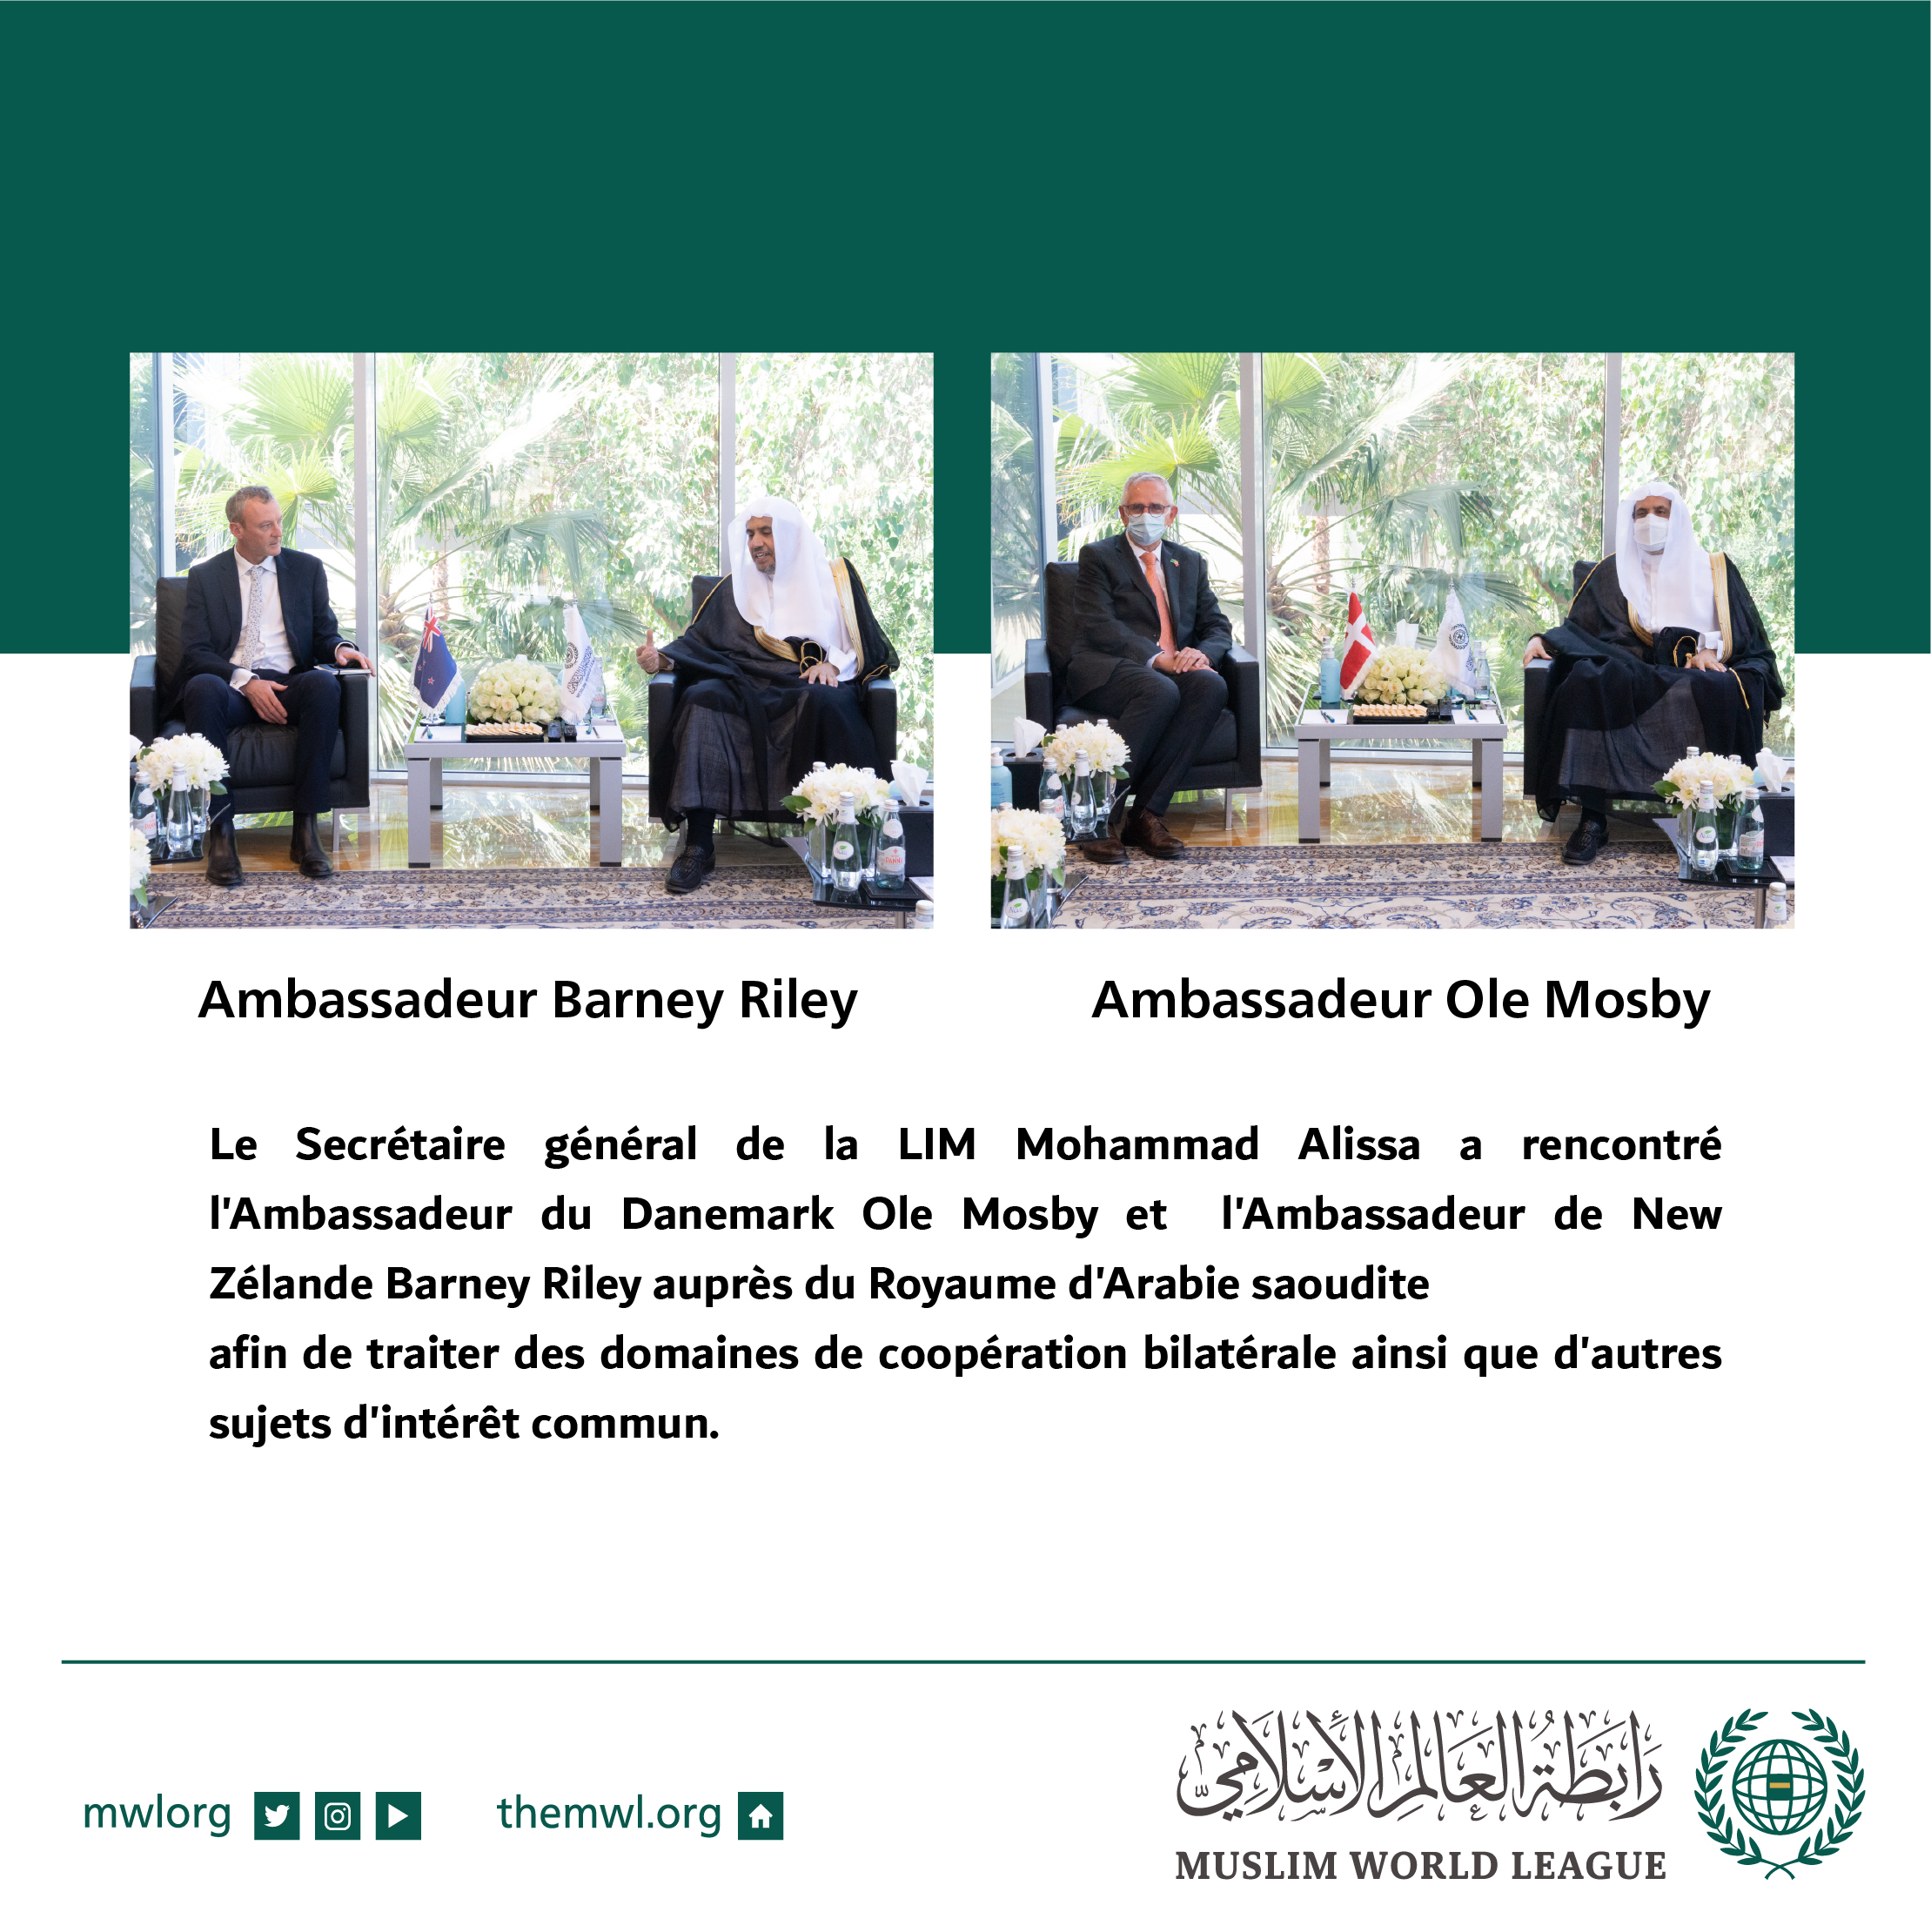 Rencontre du Secrétaire général de la LIM Mohammad Alissa avec l’Ambassadeur du Danemark et l’Ambassadeur de Nouvelle-Zélande auprès du Royaume d’arabie Saoudite